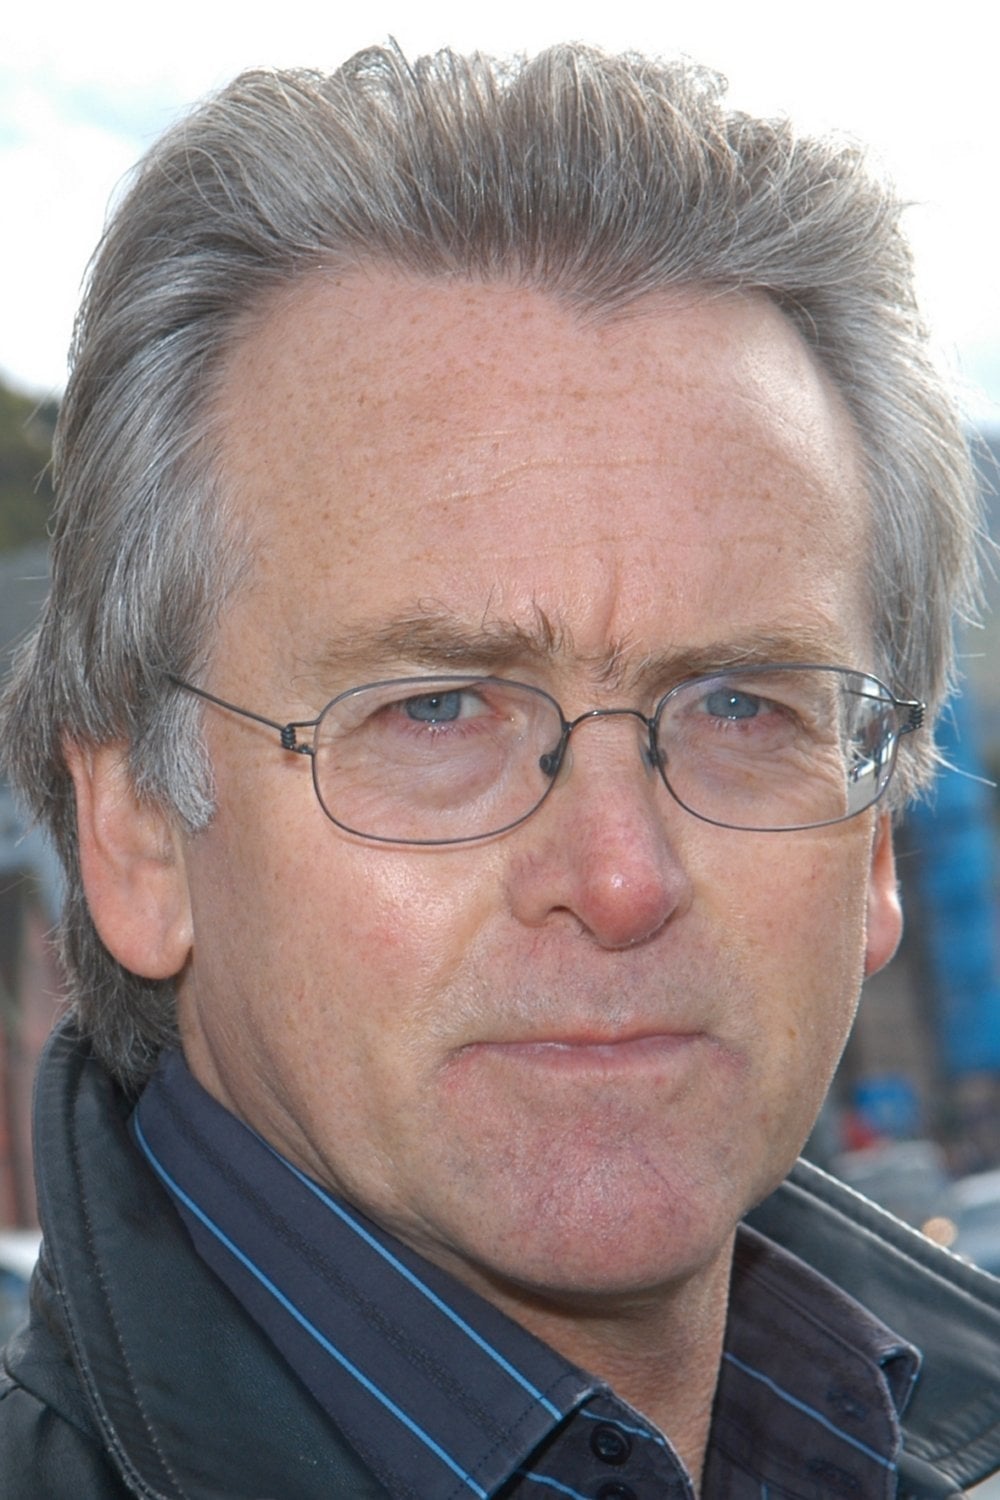 Gunnar Staalesen